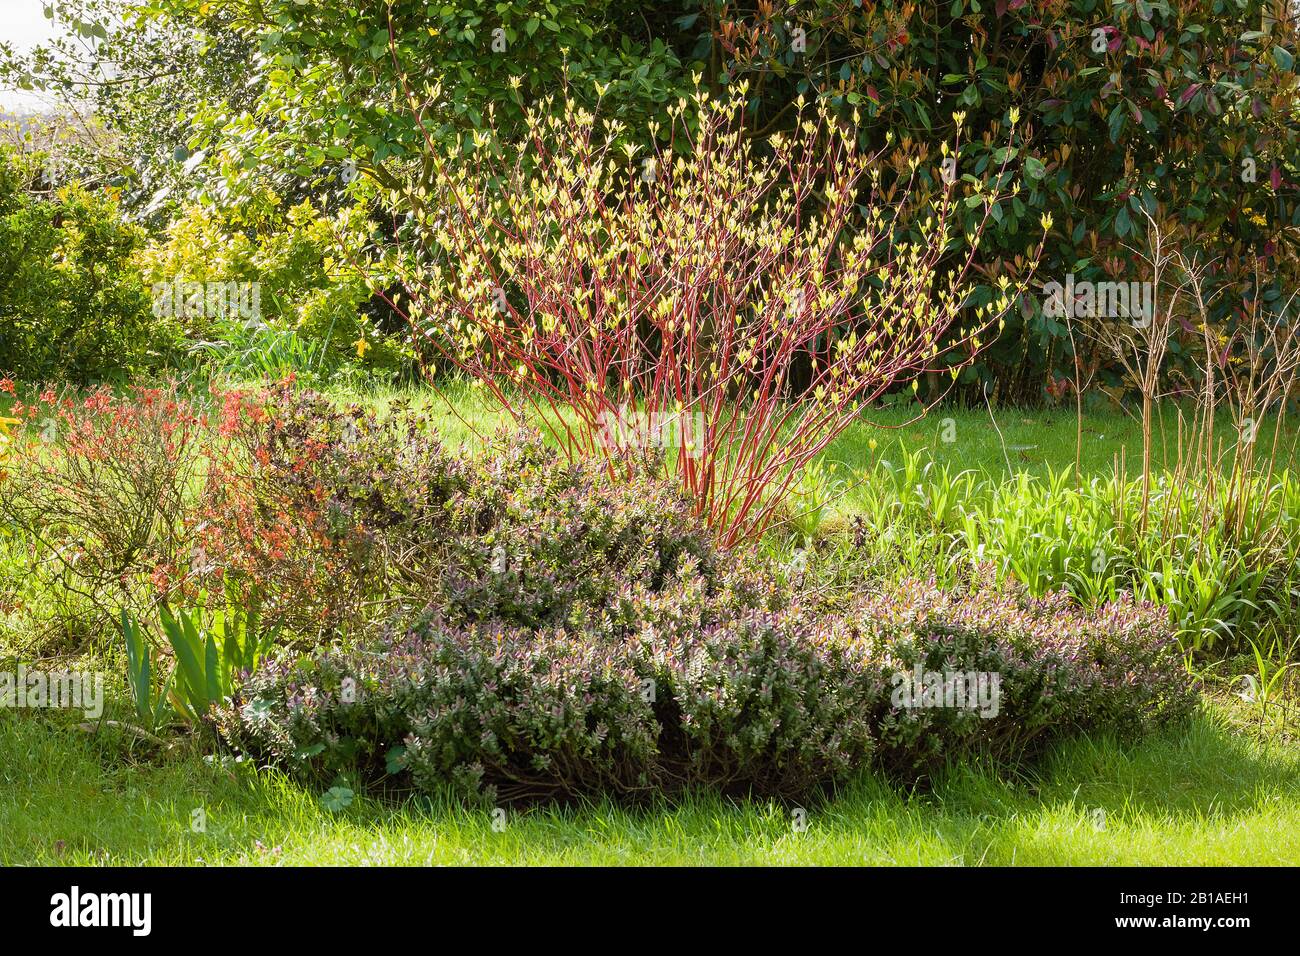 Primeros signos de nuevo crecimiento en un dogwood de tallo rojo en un jardín inglés Foto de stock